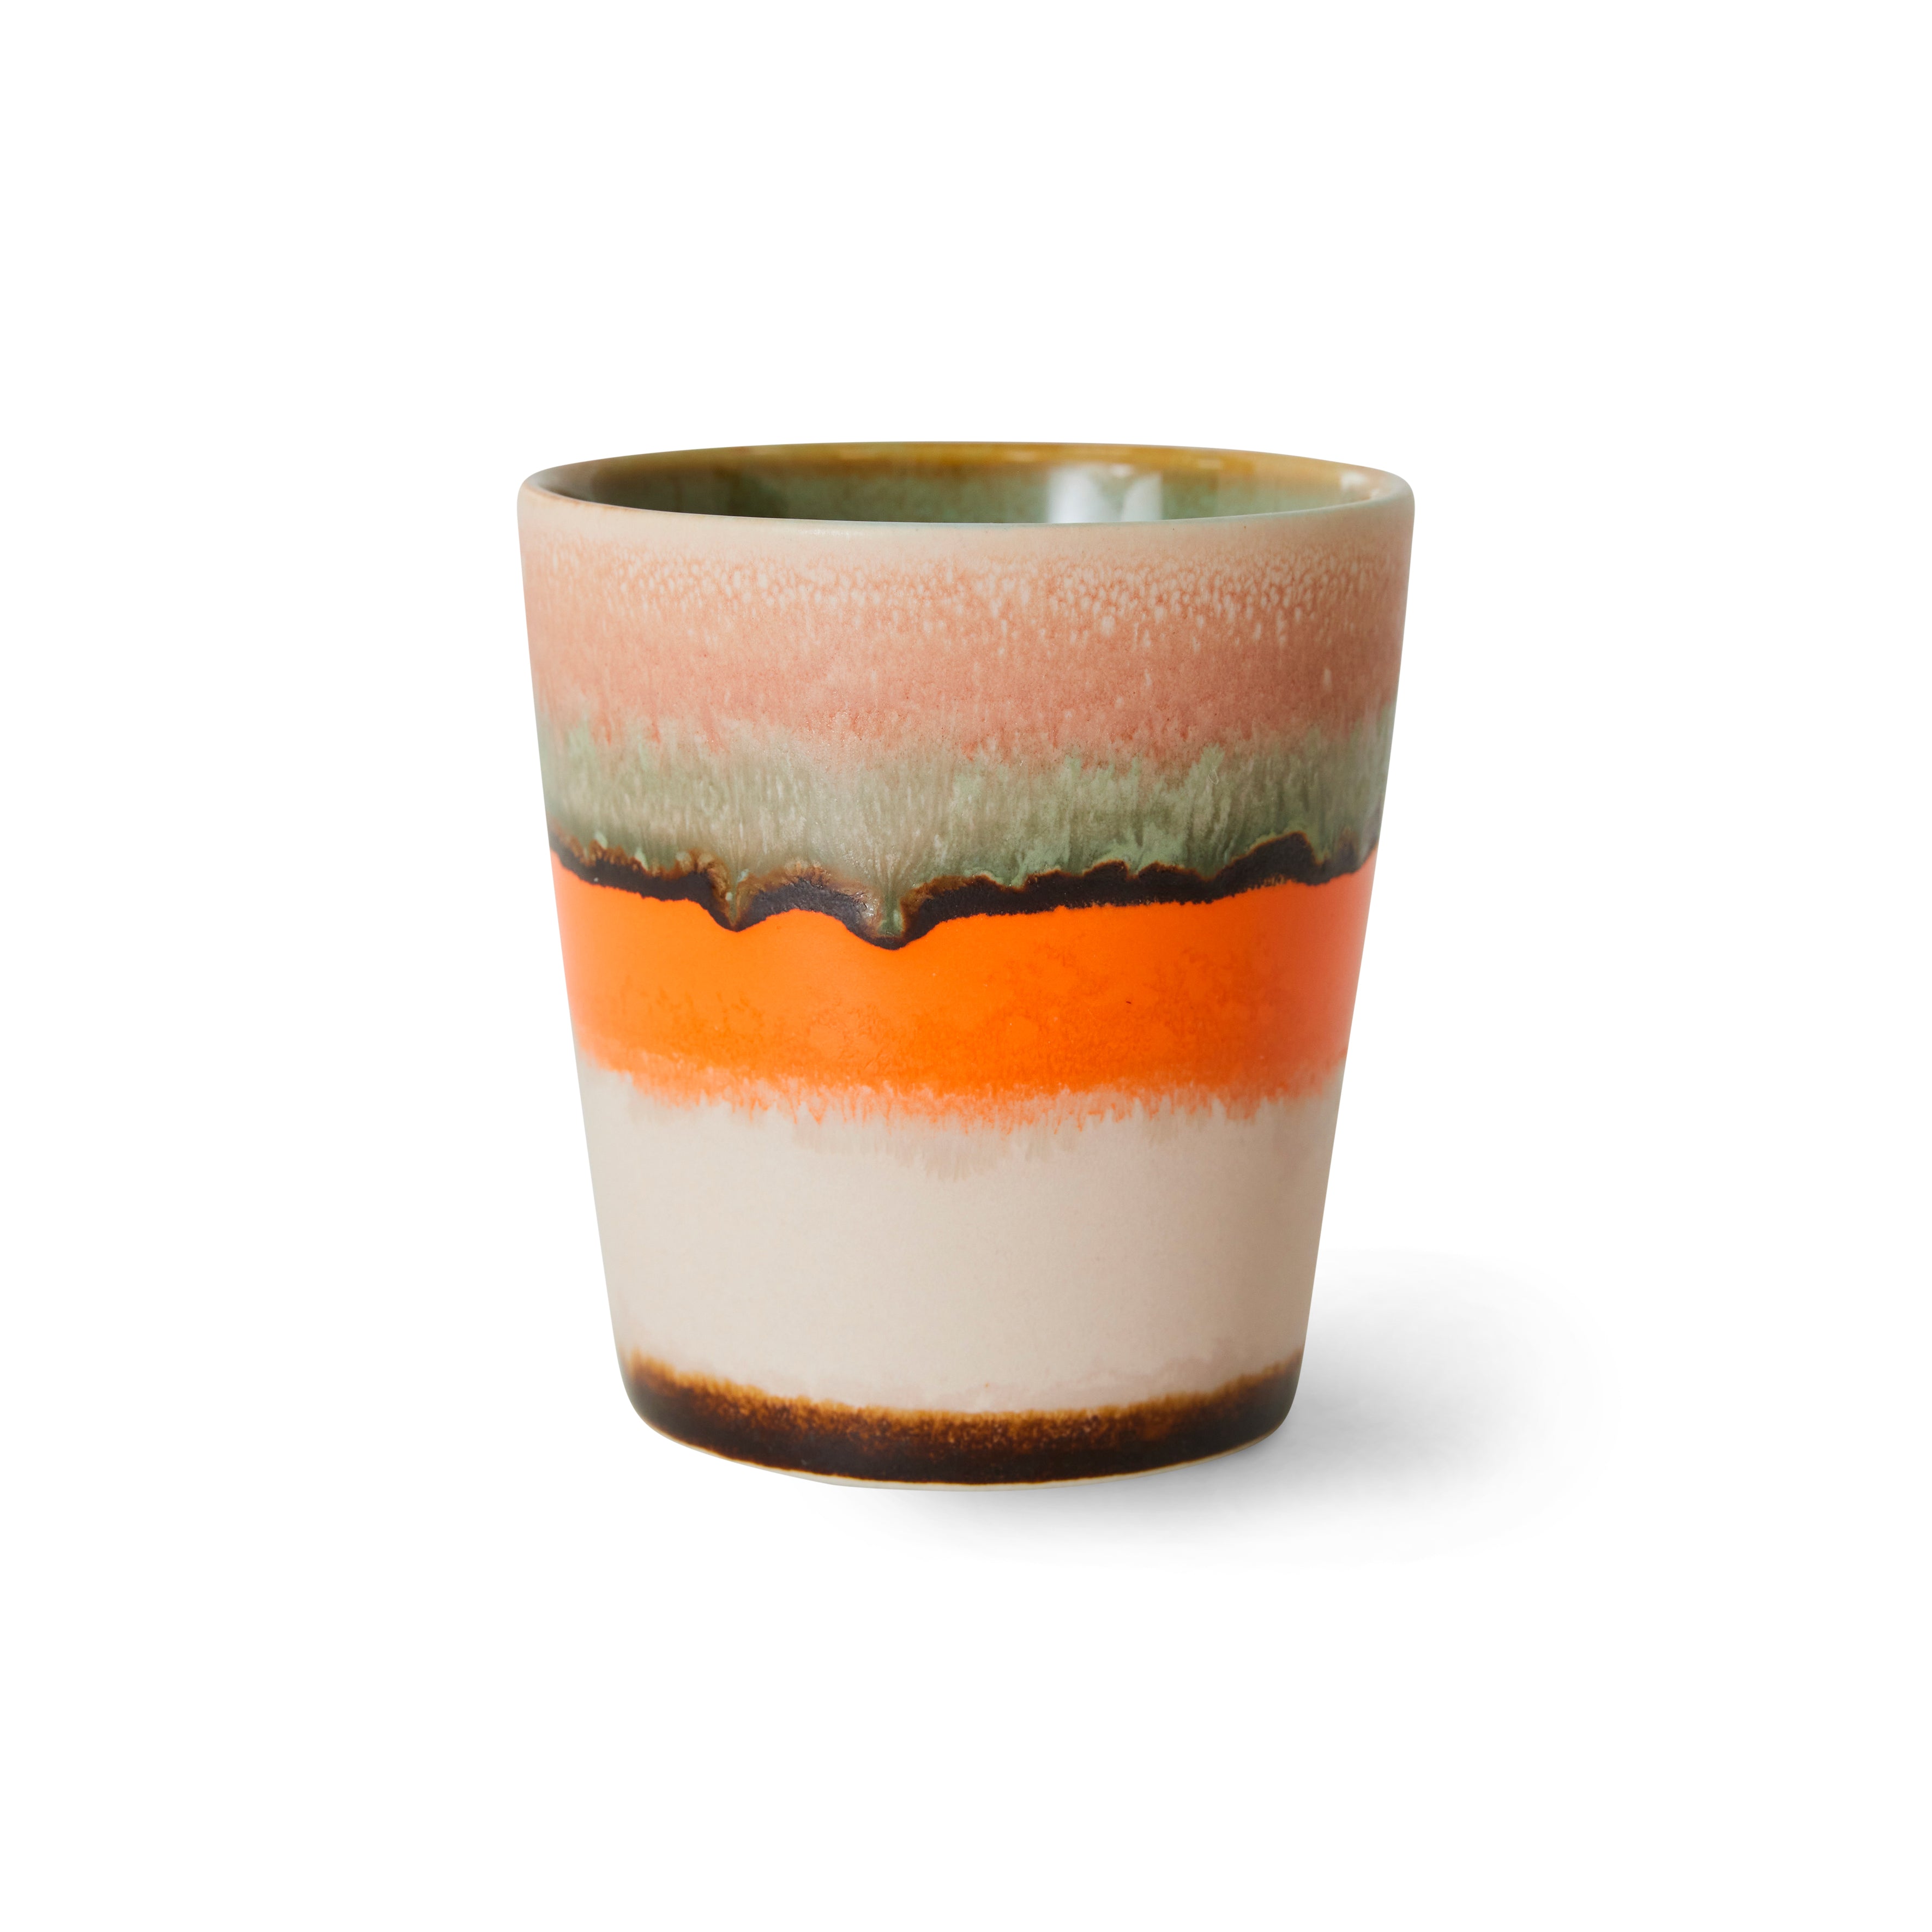 70s ceramics: coffee mug, burst